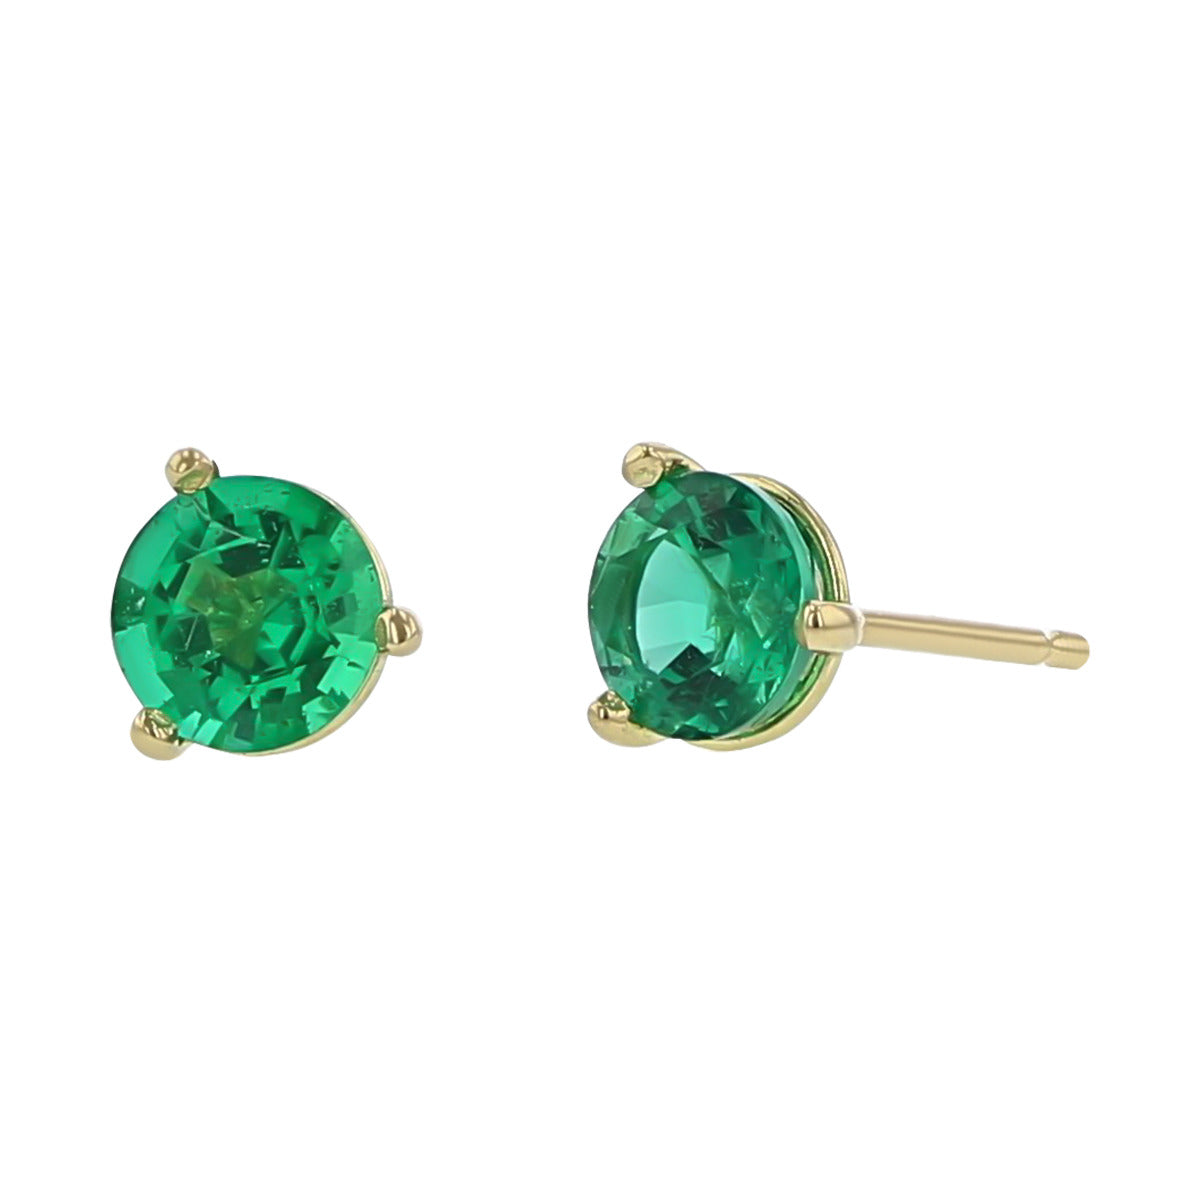 EMERALD STUD EARRINGS, Green Gold Earrings, Crystal, Emerald Crystals,  Bridal Leaf Earrings,bracelet Earrings Set, Small Clusters - Etsy